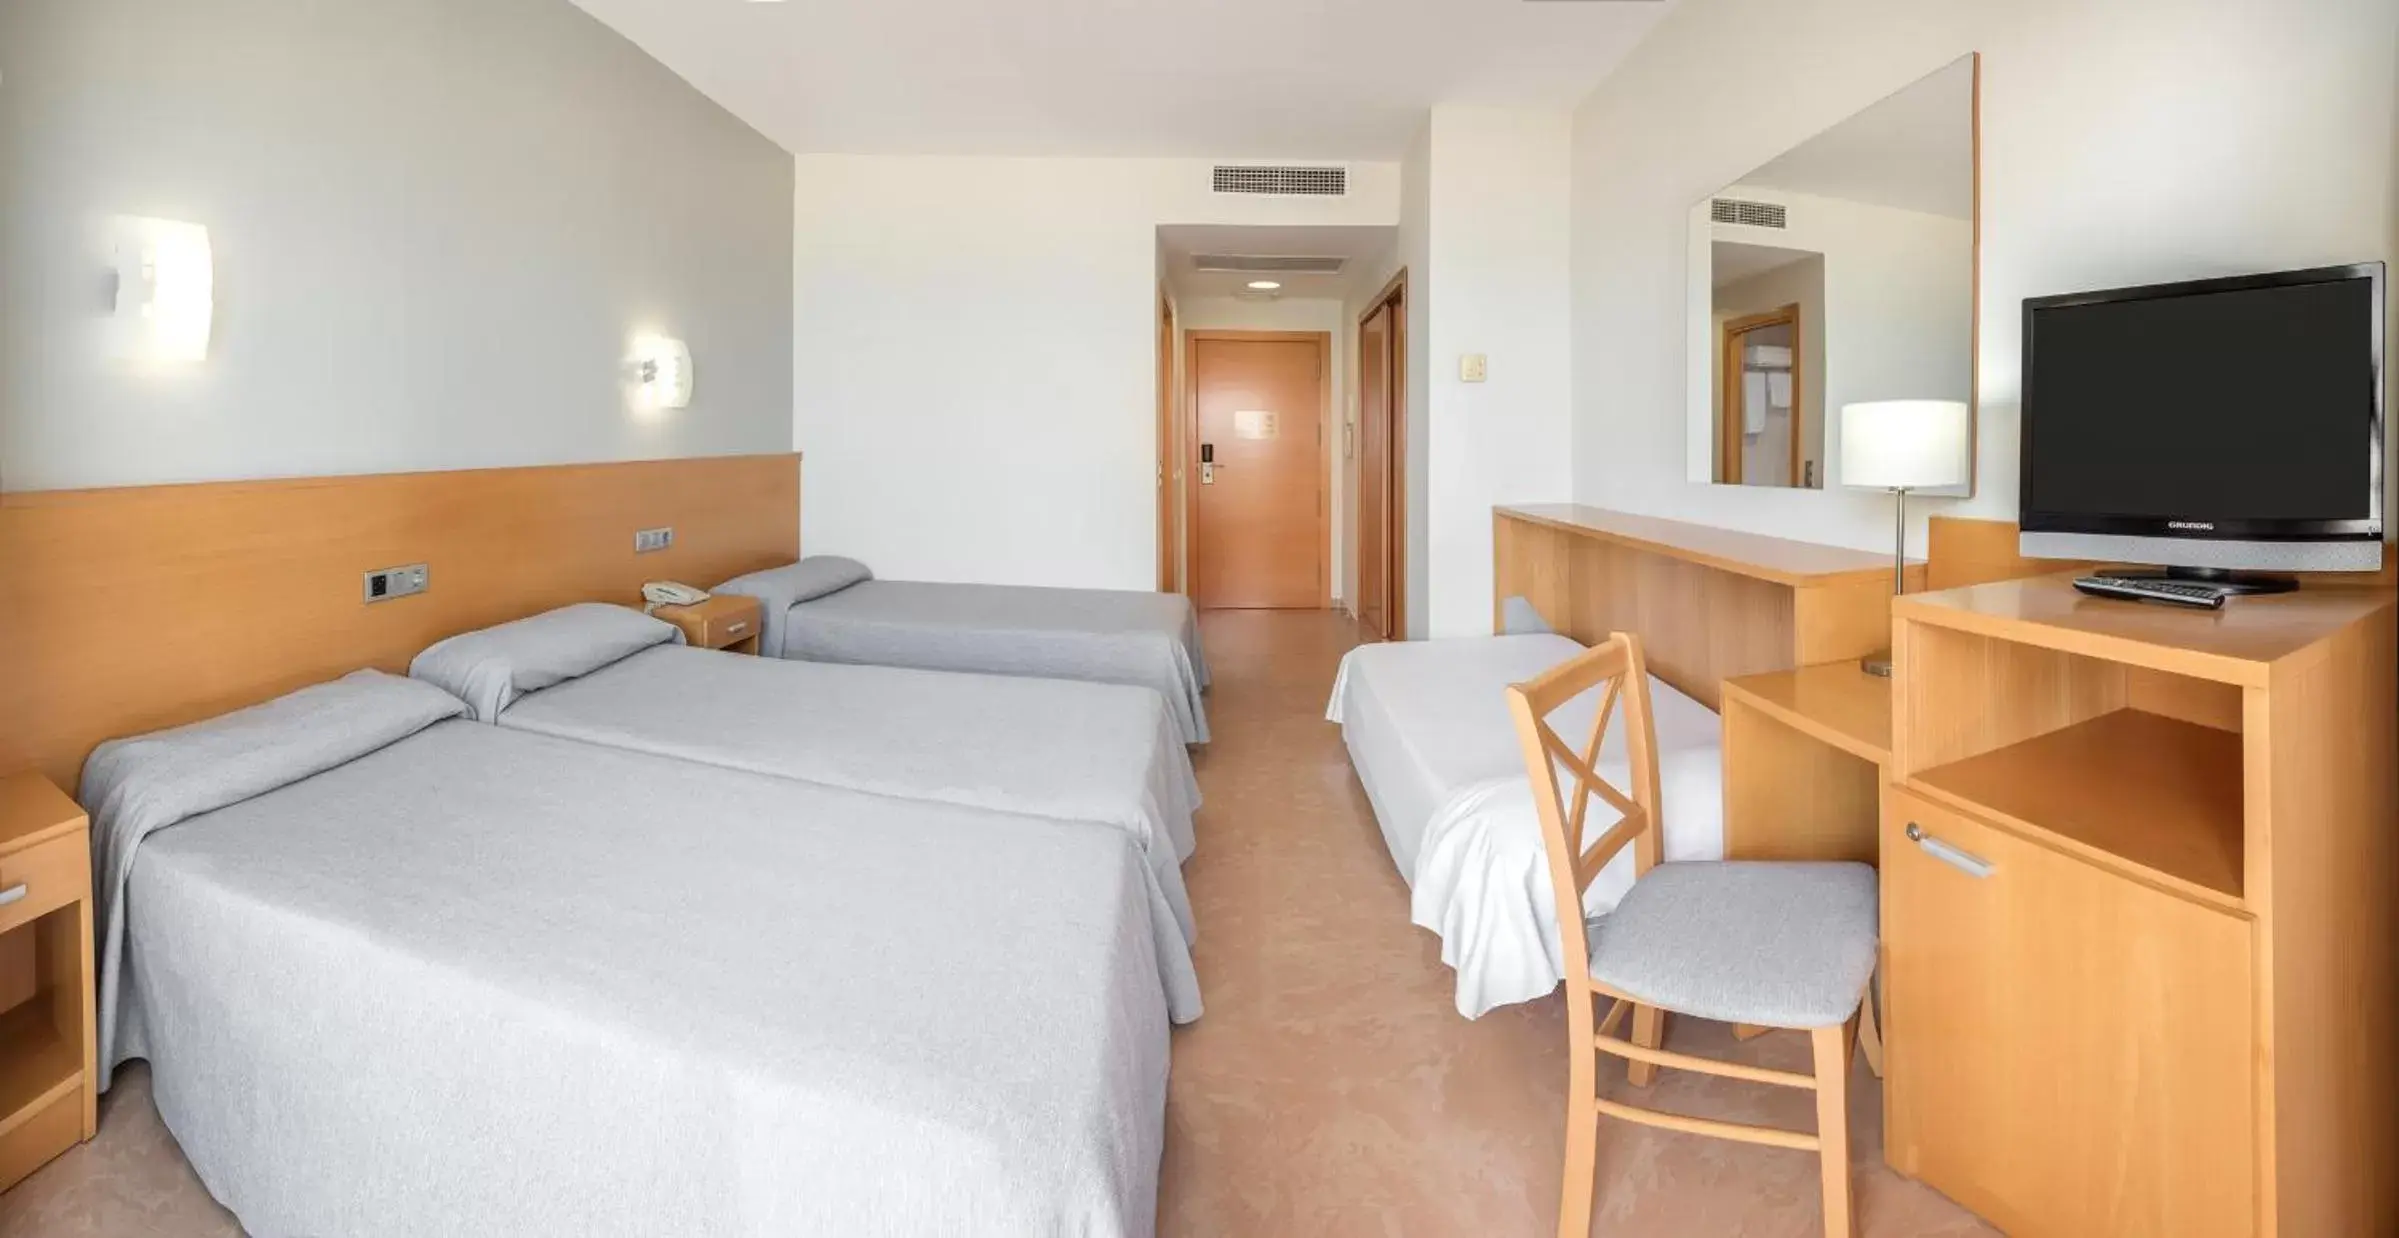 Bedroom, Room Photo in Hotel RH Gijón & Spa